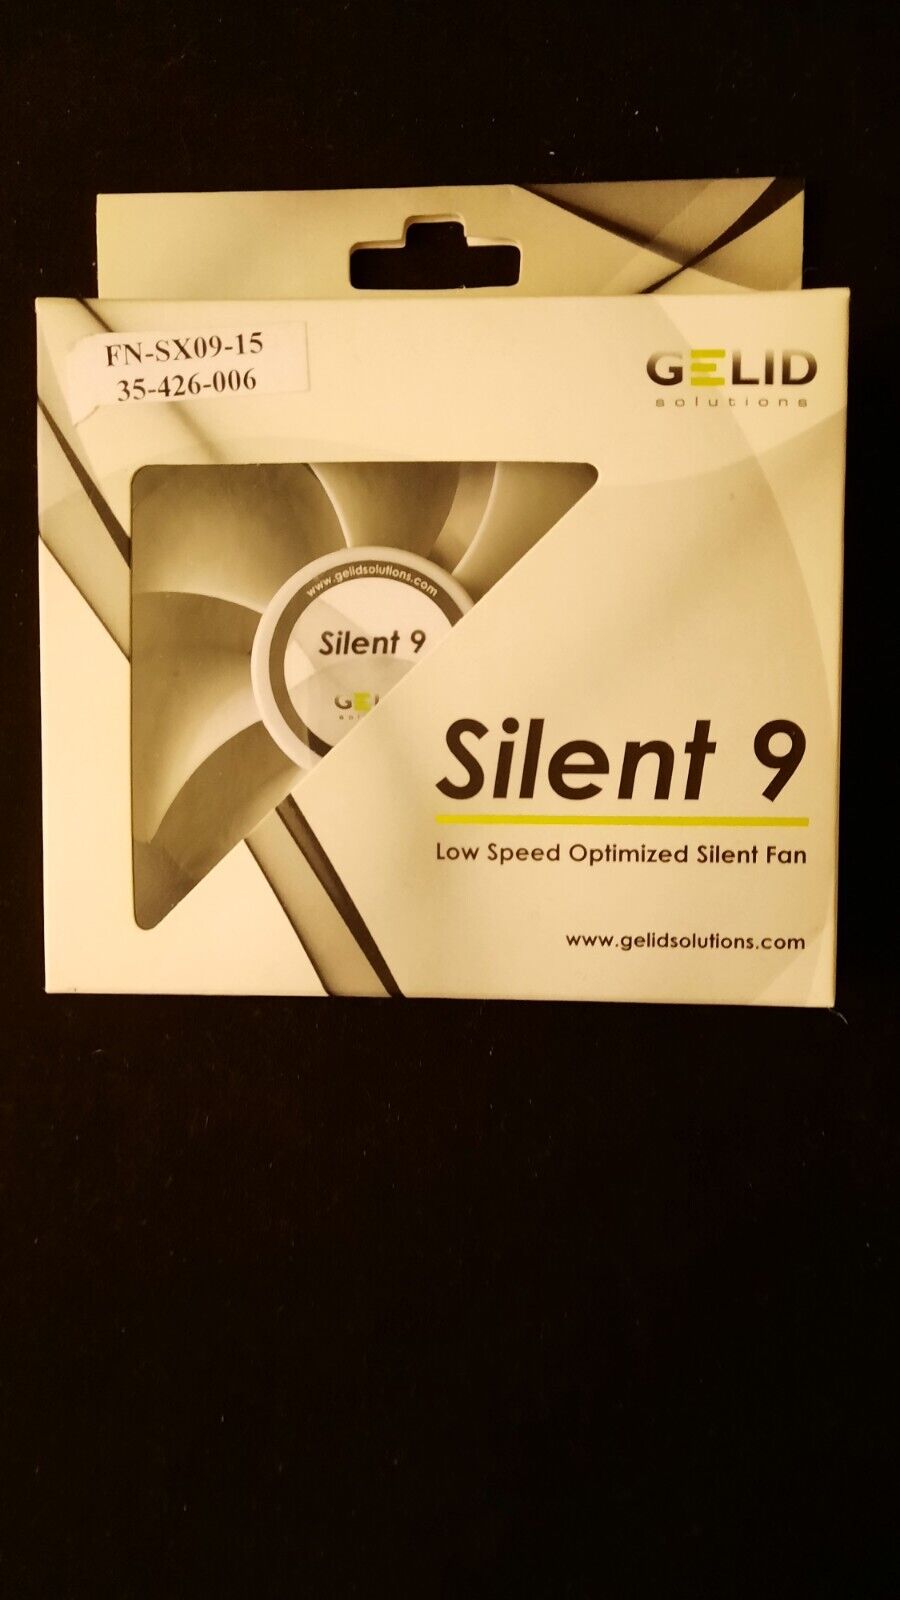 Gelid Solutions Silent 9 Low Speed Optimized Slilent Fan